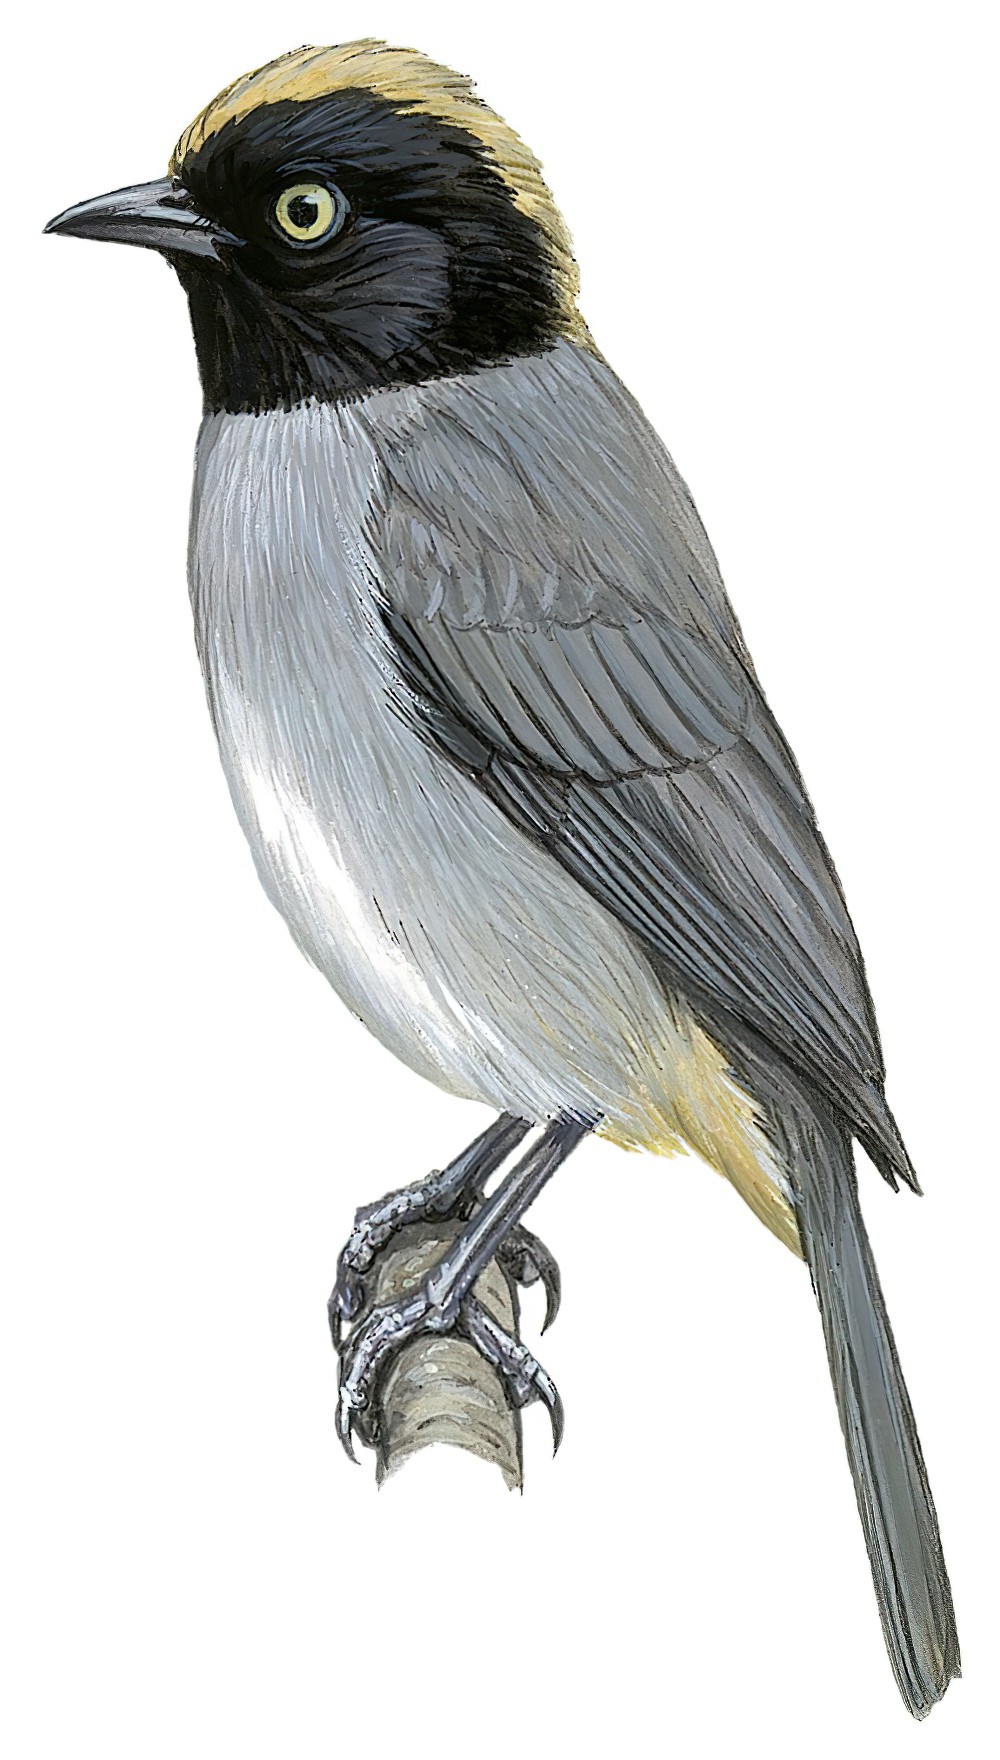 Black-headed Hemispingus / Pseudospingus verticalis